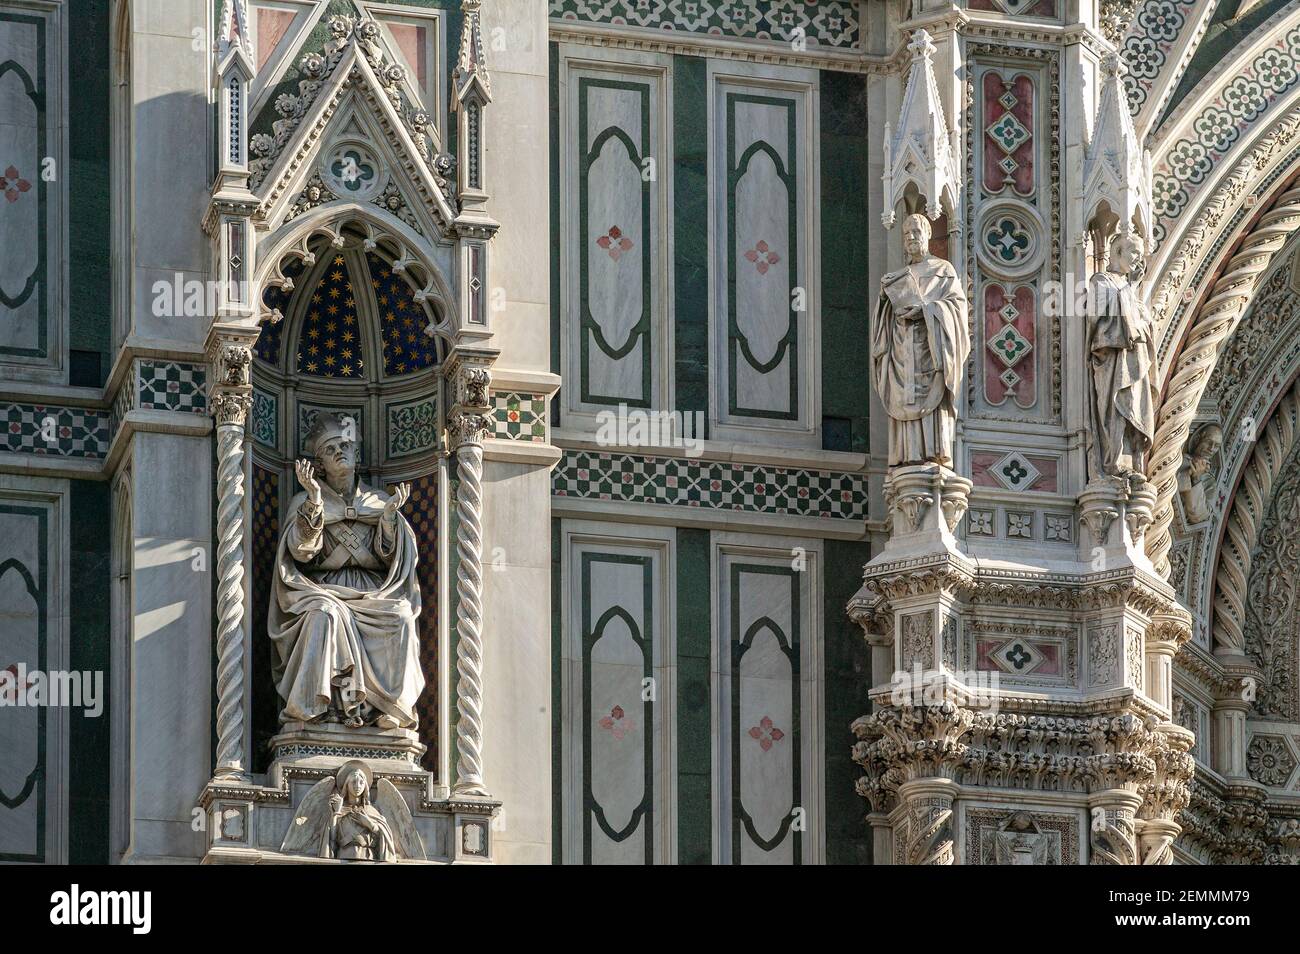 Detail der Statuen und Dekorationen, die die Fassade der Kathedrale von Santa Maria del Fiore schmücken. Florenz, Toskana, Italien, Europa Stockfoto